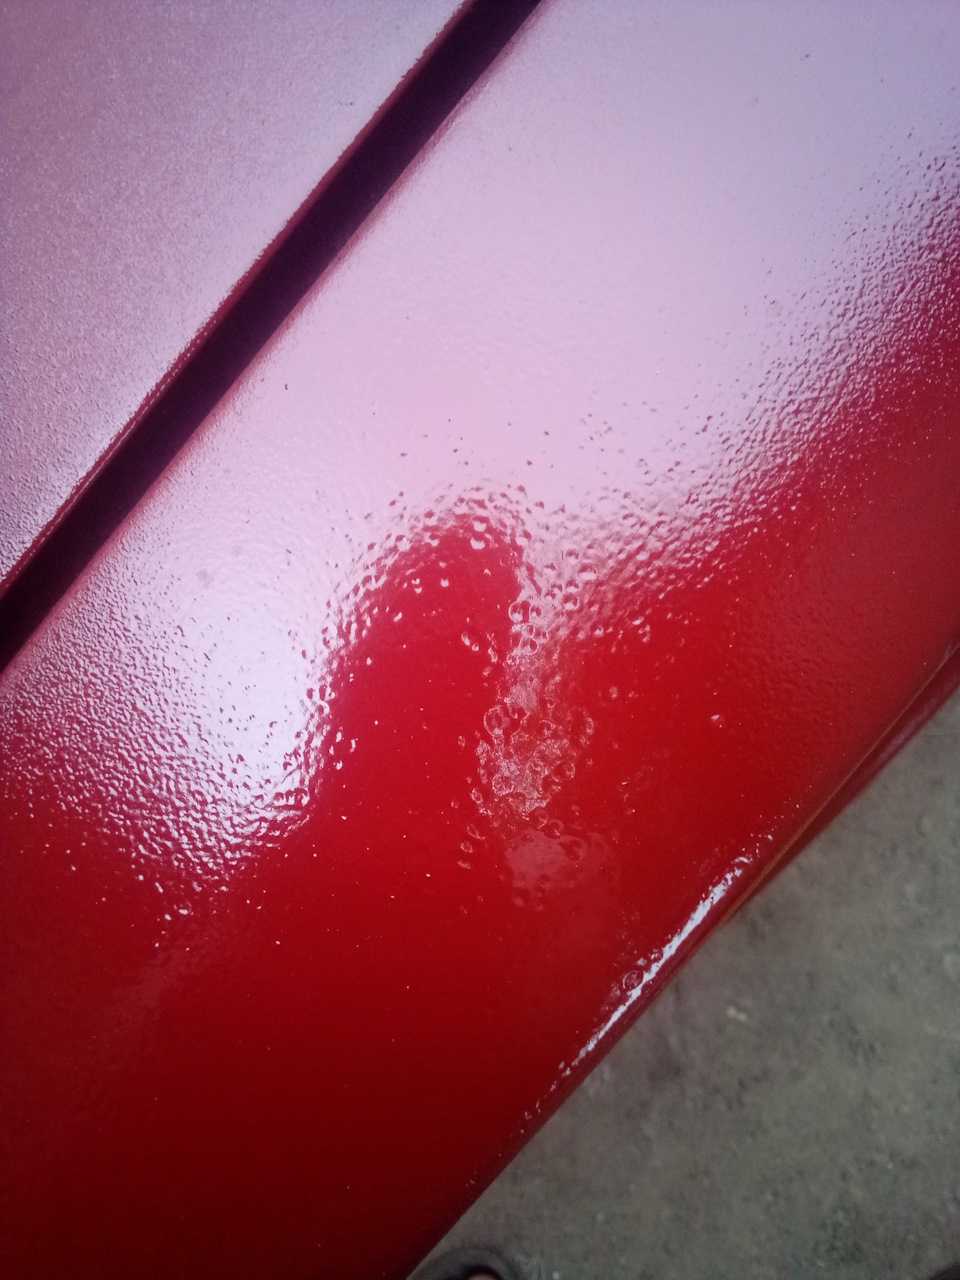 Как полировать машину после покраски правильно своими руками?